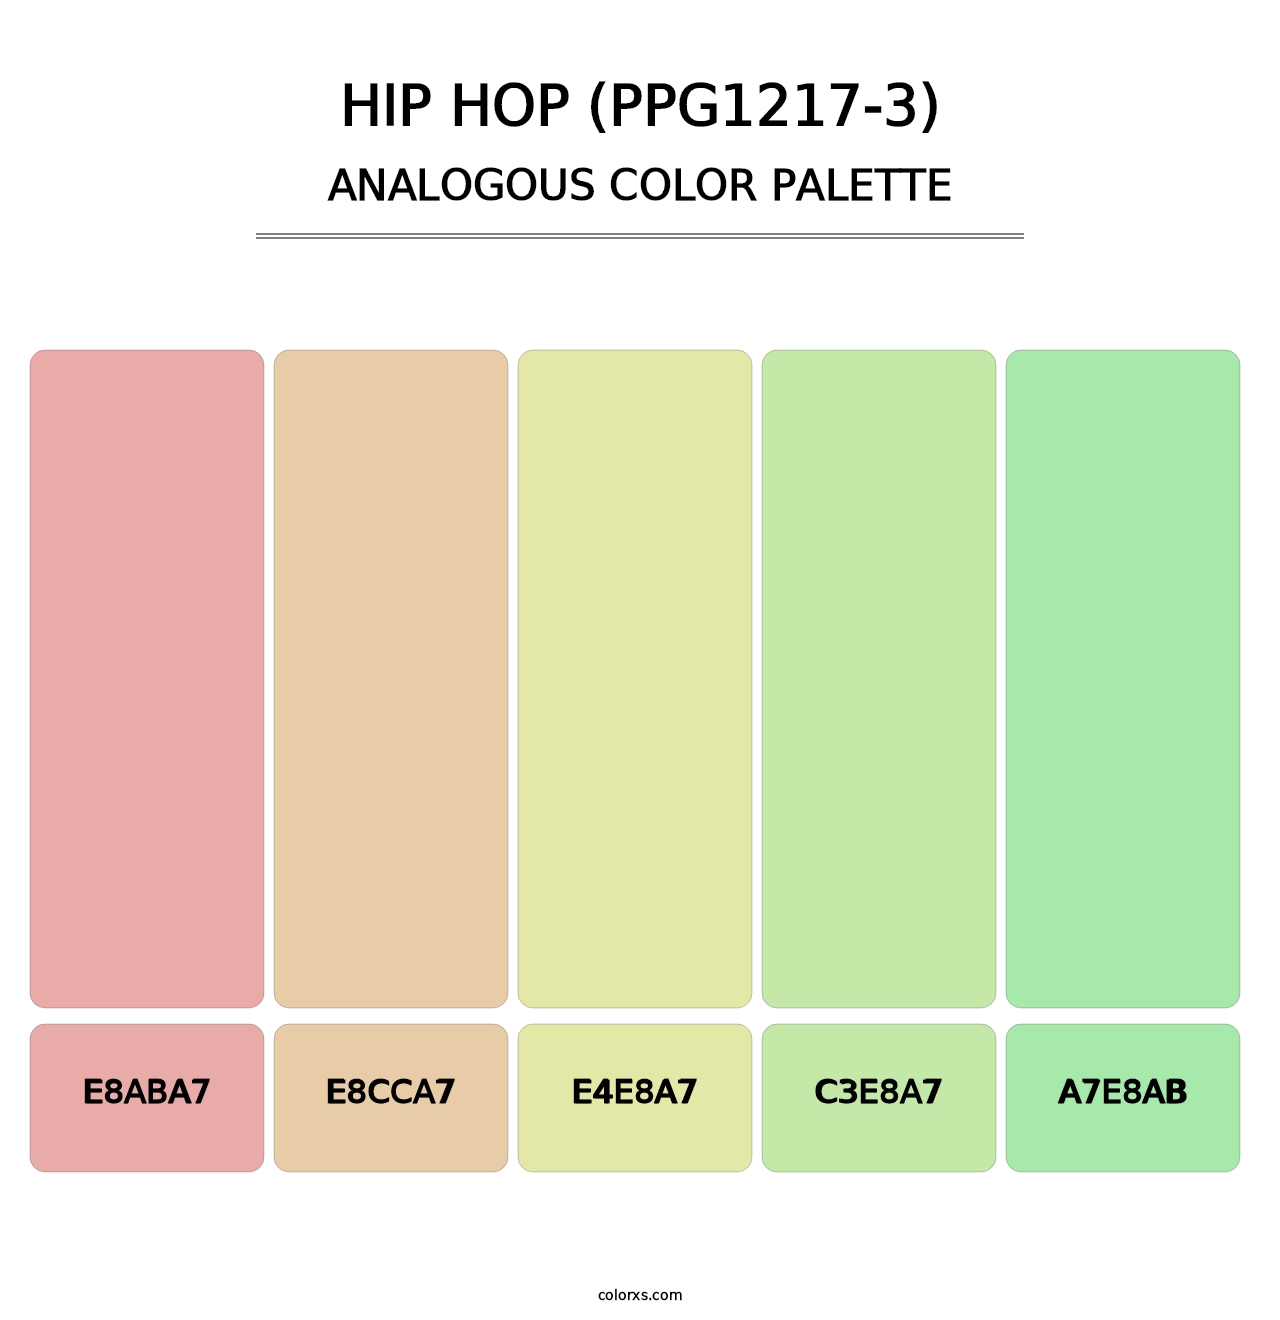 Hip Hop (PPG1217-3) - Analogous Color Palette